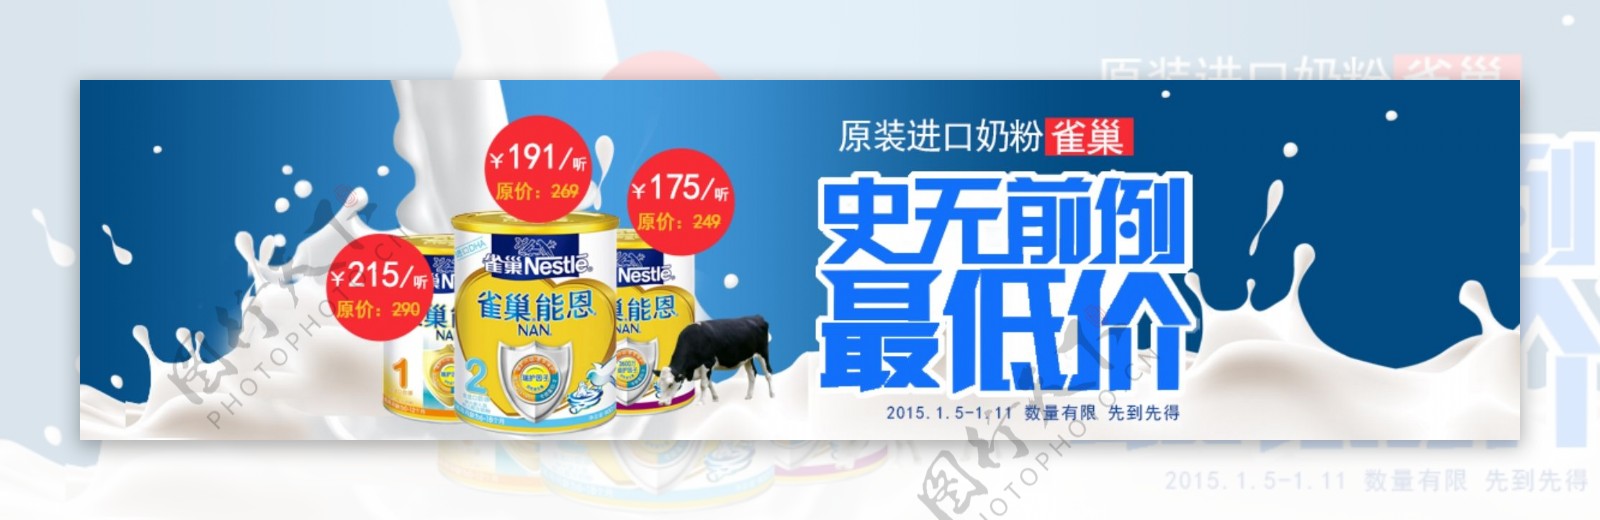 罐装奶粉低价促销牛奶轮播广告banner